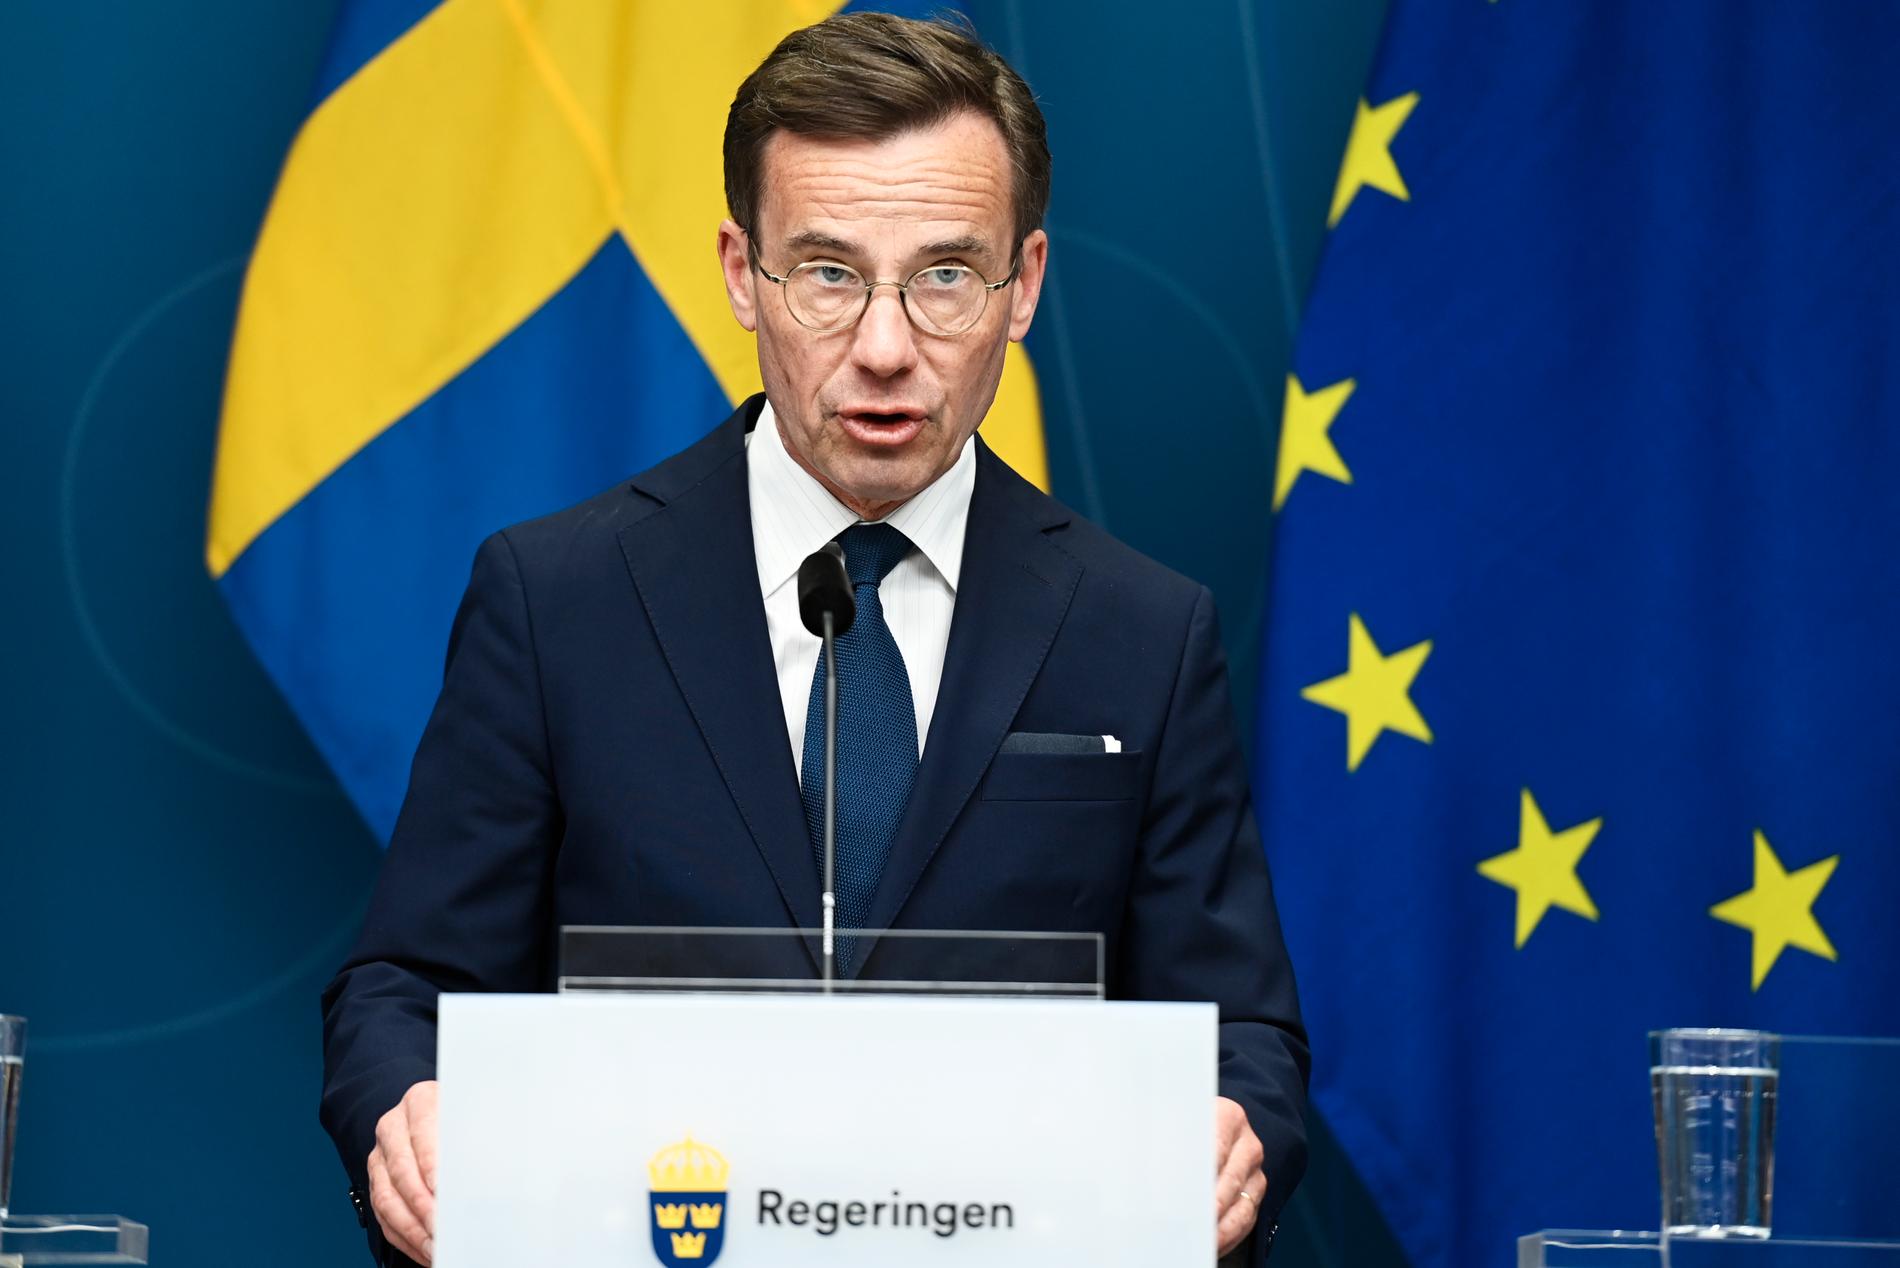 Statsminister Kristersson lyfte hbtq-personers rättighet i sin regeringsförklaring.